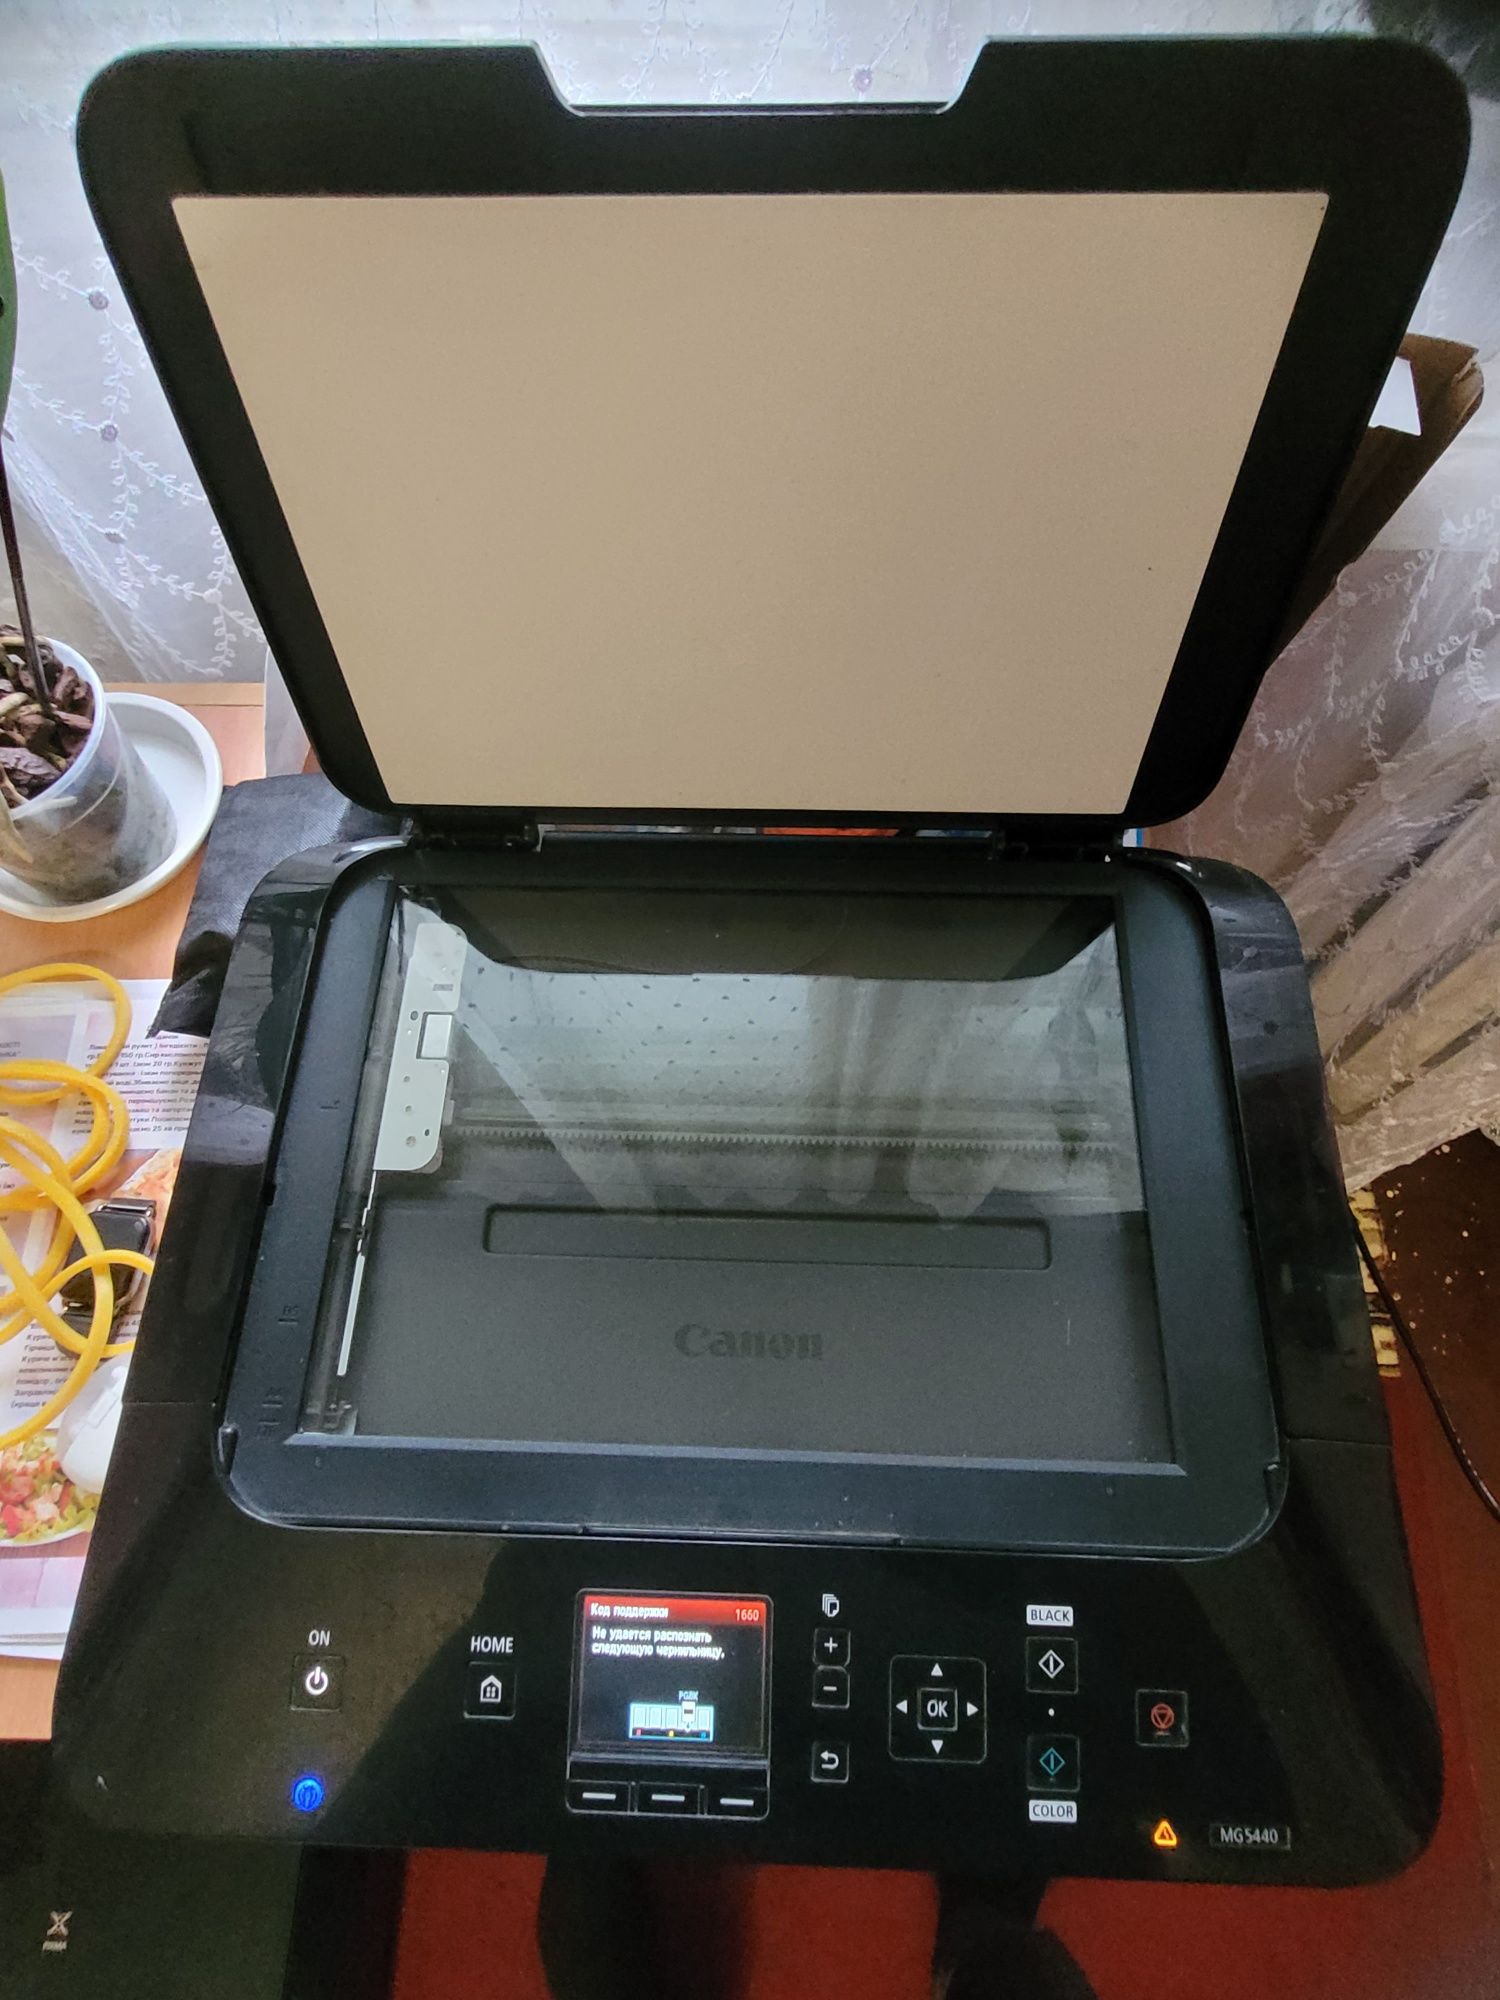 Canon 5440 принтер, сканер